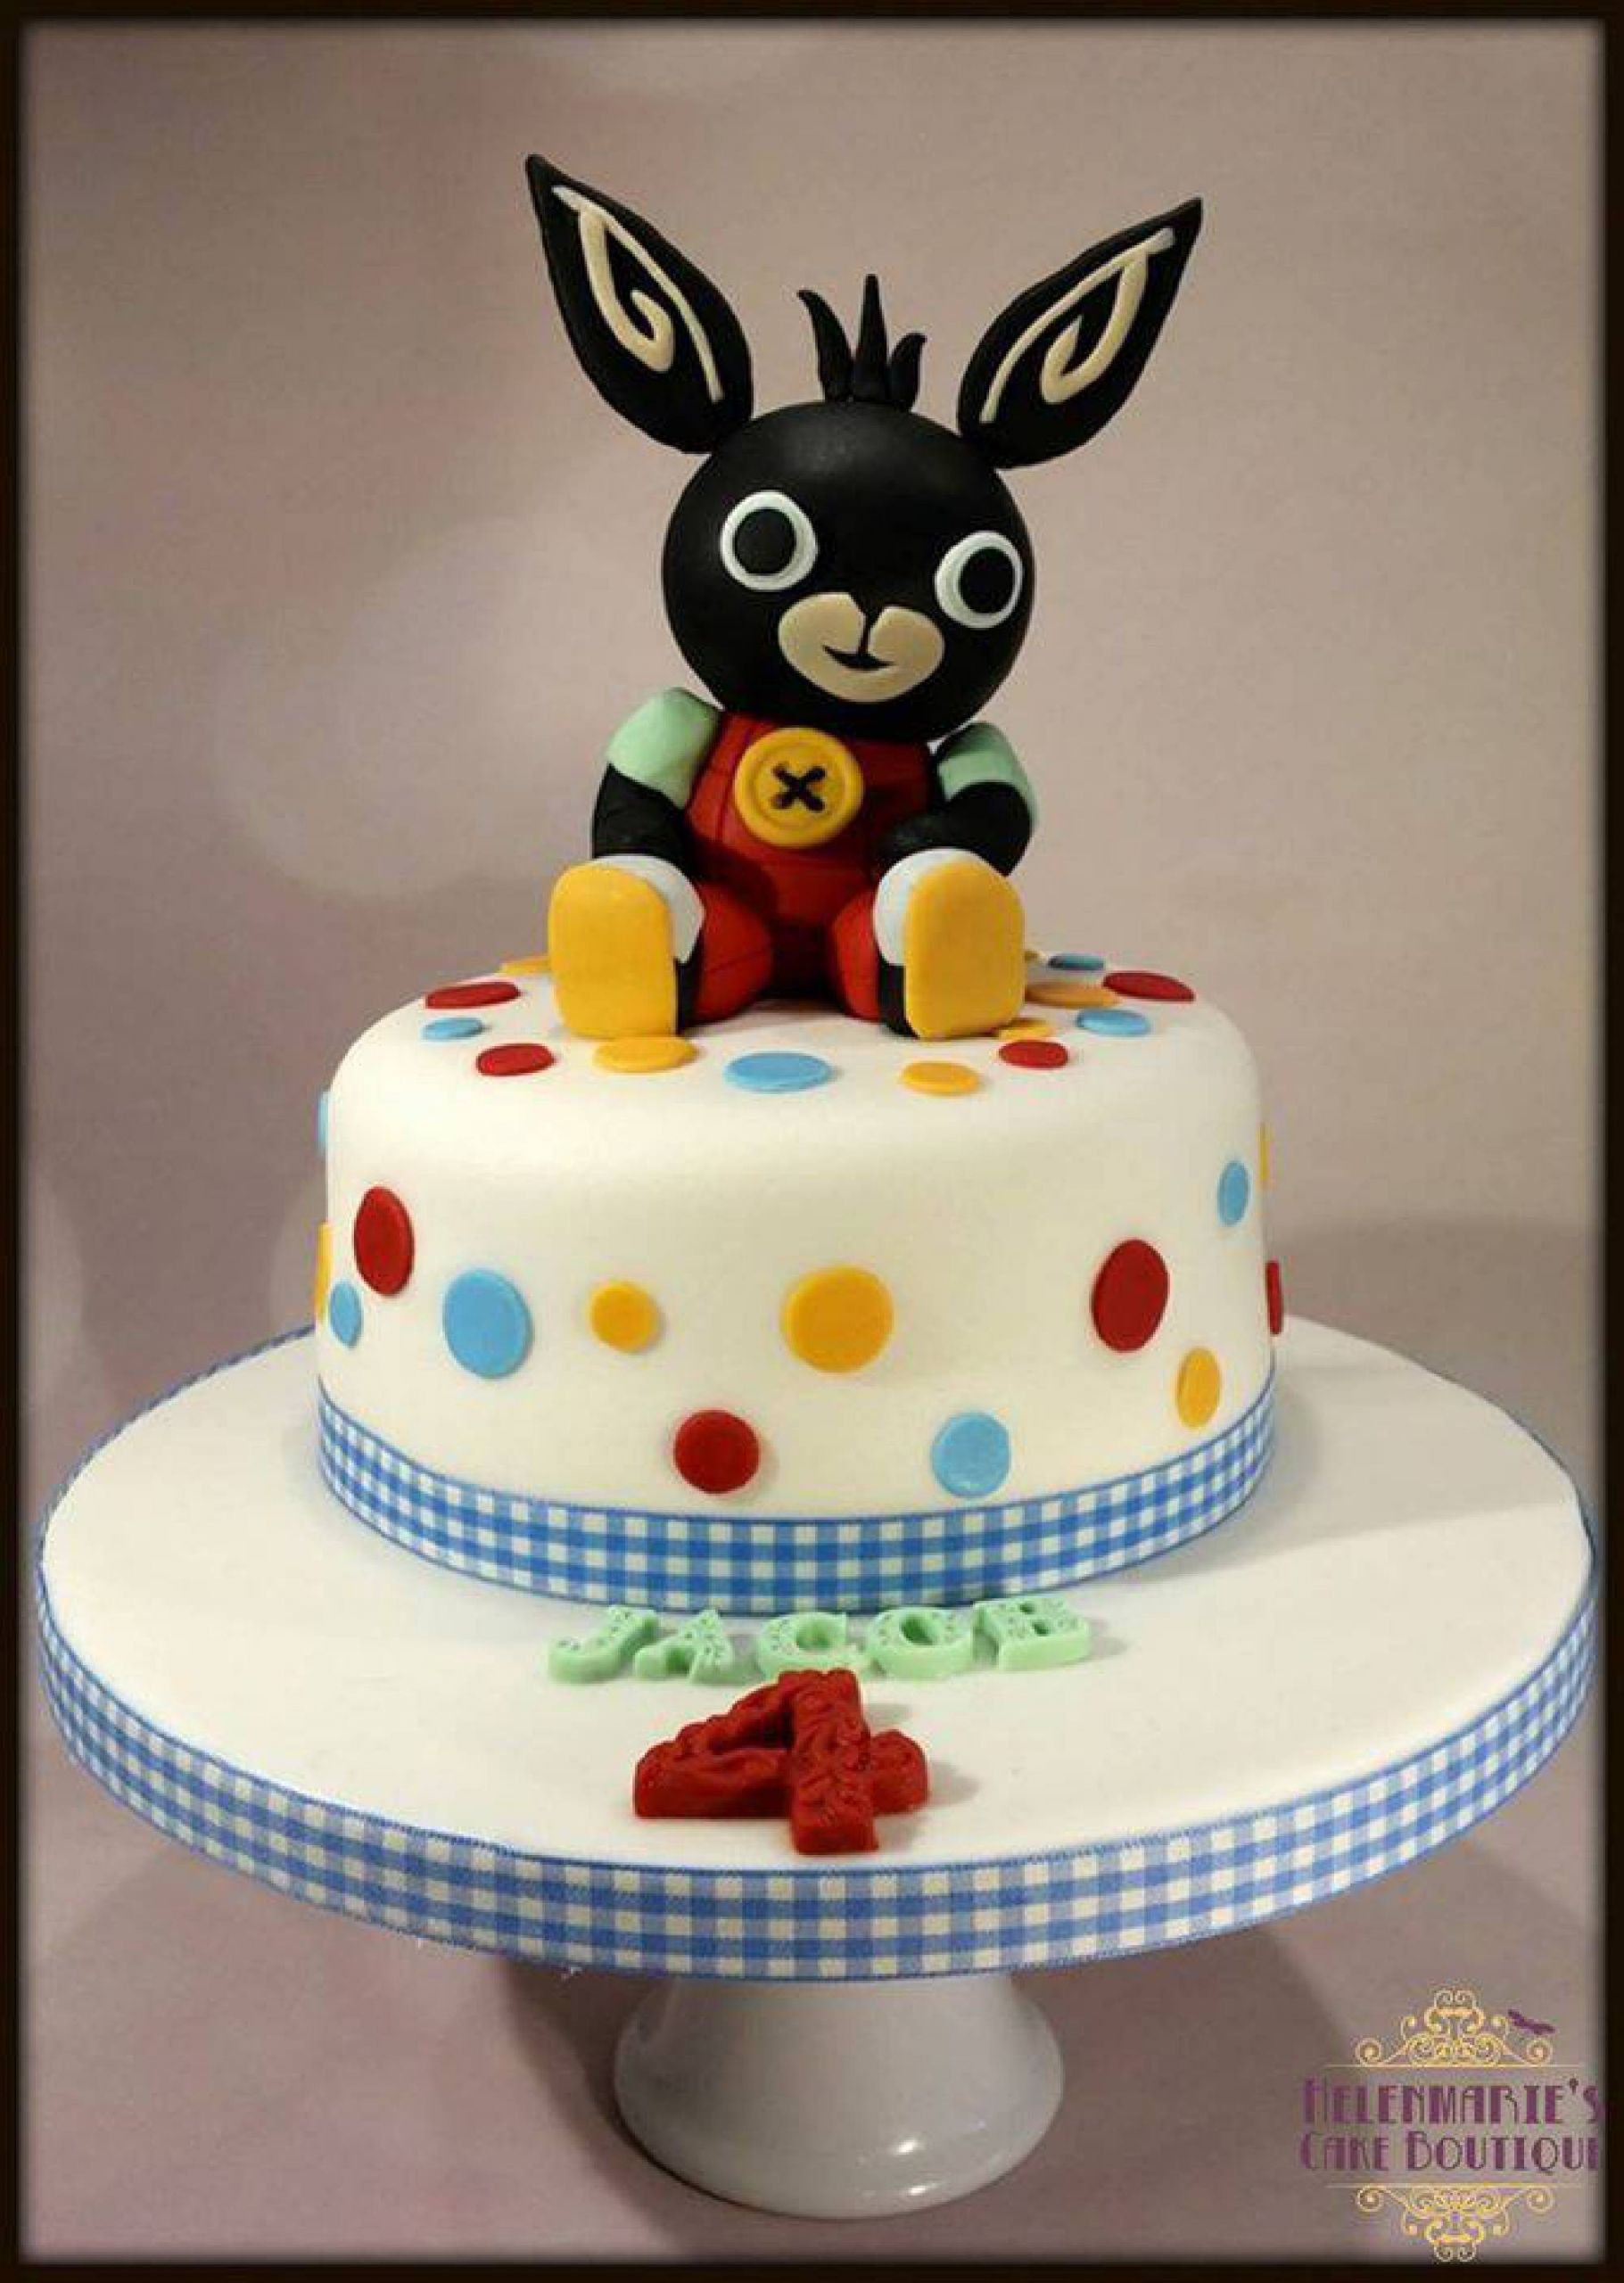 Birthday Cake Images Free
 Bing Cake